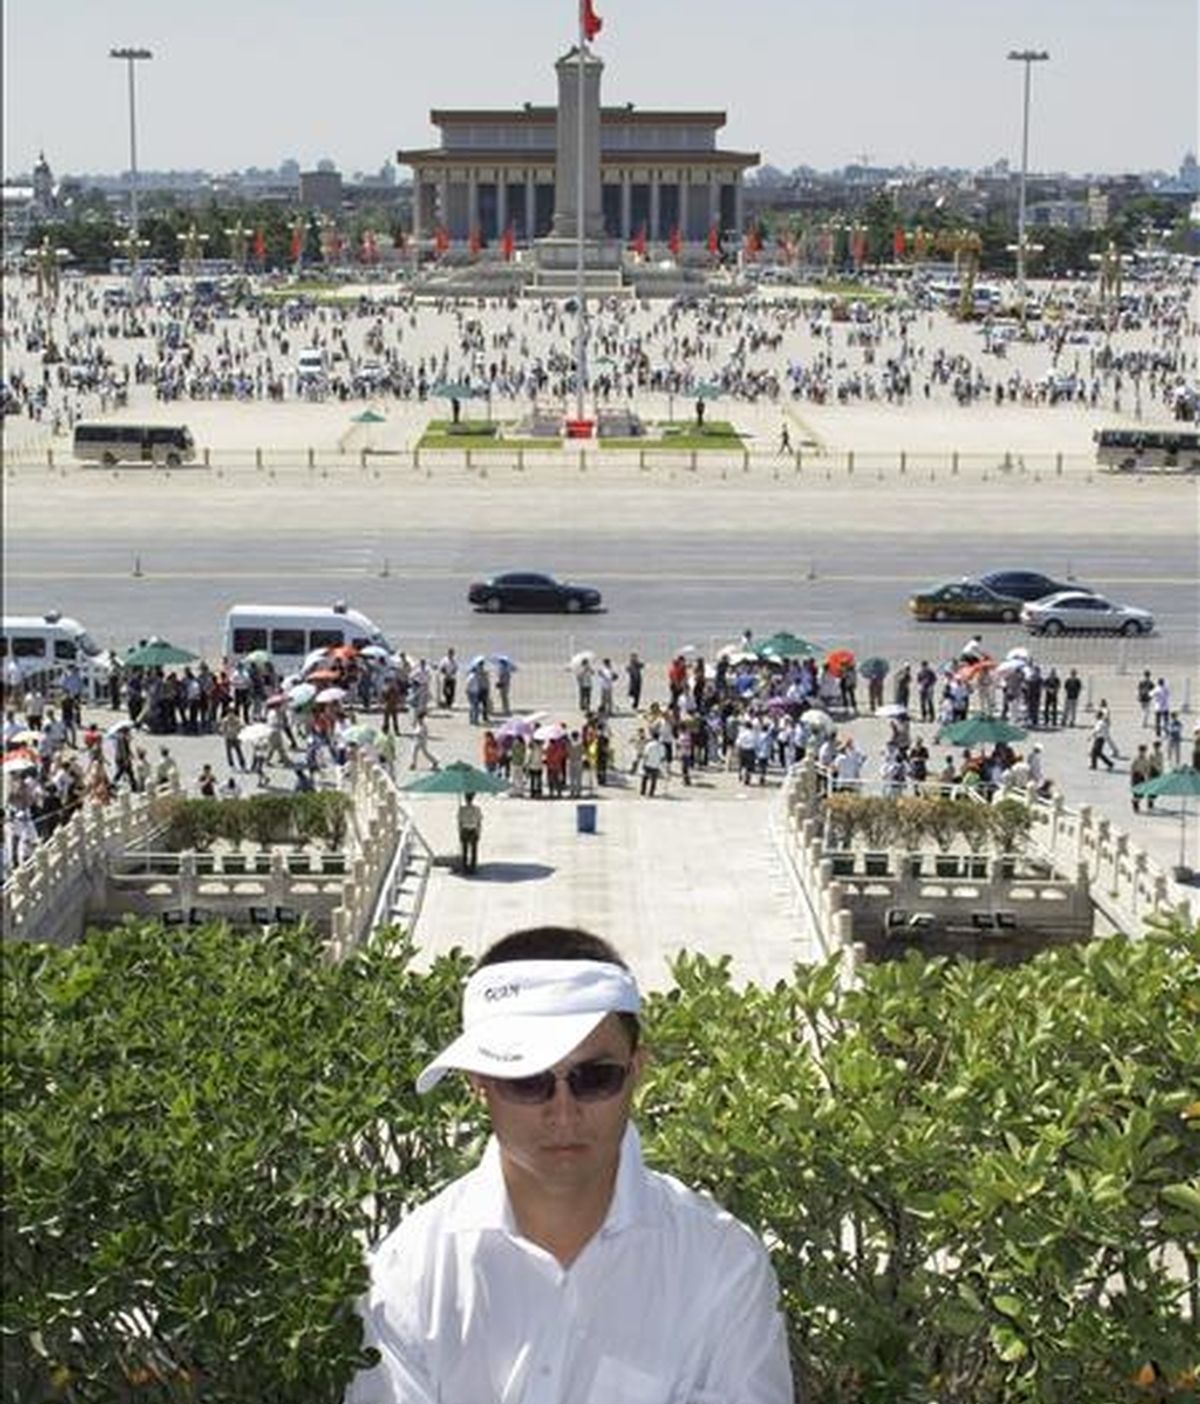 Un guardia de seguridad permanece frente a la Plaza de Tiananmen en Pekín (China), hoy, 3 de junio, cuando la seguridad en la Plaza se ha incrementado mientras se acerca las fechas de 3 y 4 de junio que marcan el vigésimo aniversario de la violenta represión ejercida por el Gobierno chino contra los estudiantes y trabajadores que se manifestaron durante la primavera de 1989 para pedir reformas políticas en China. EFE